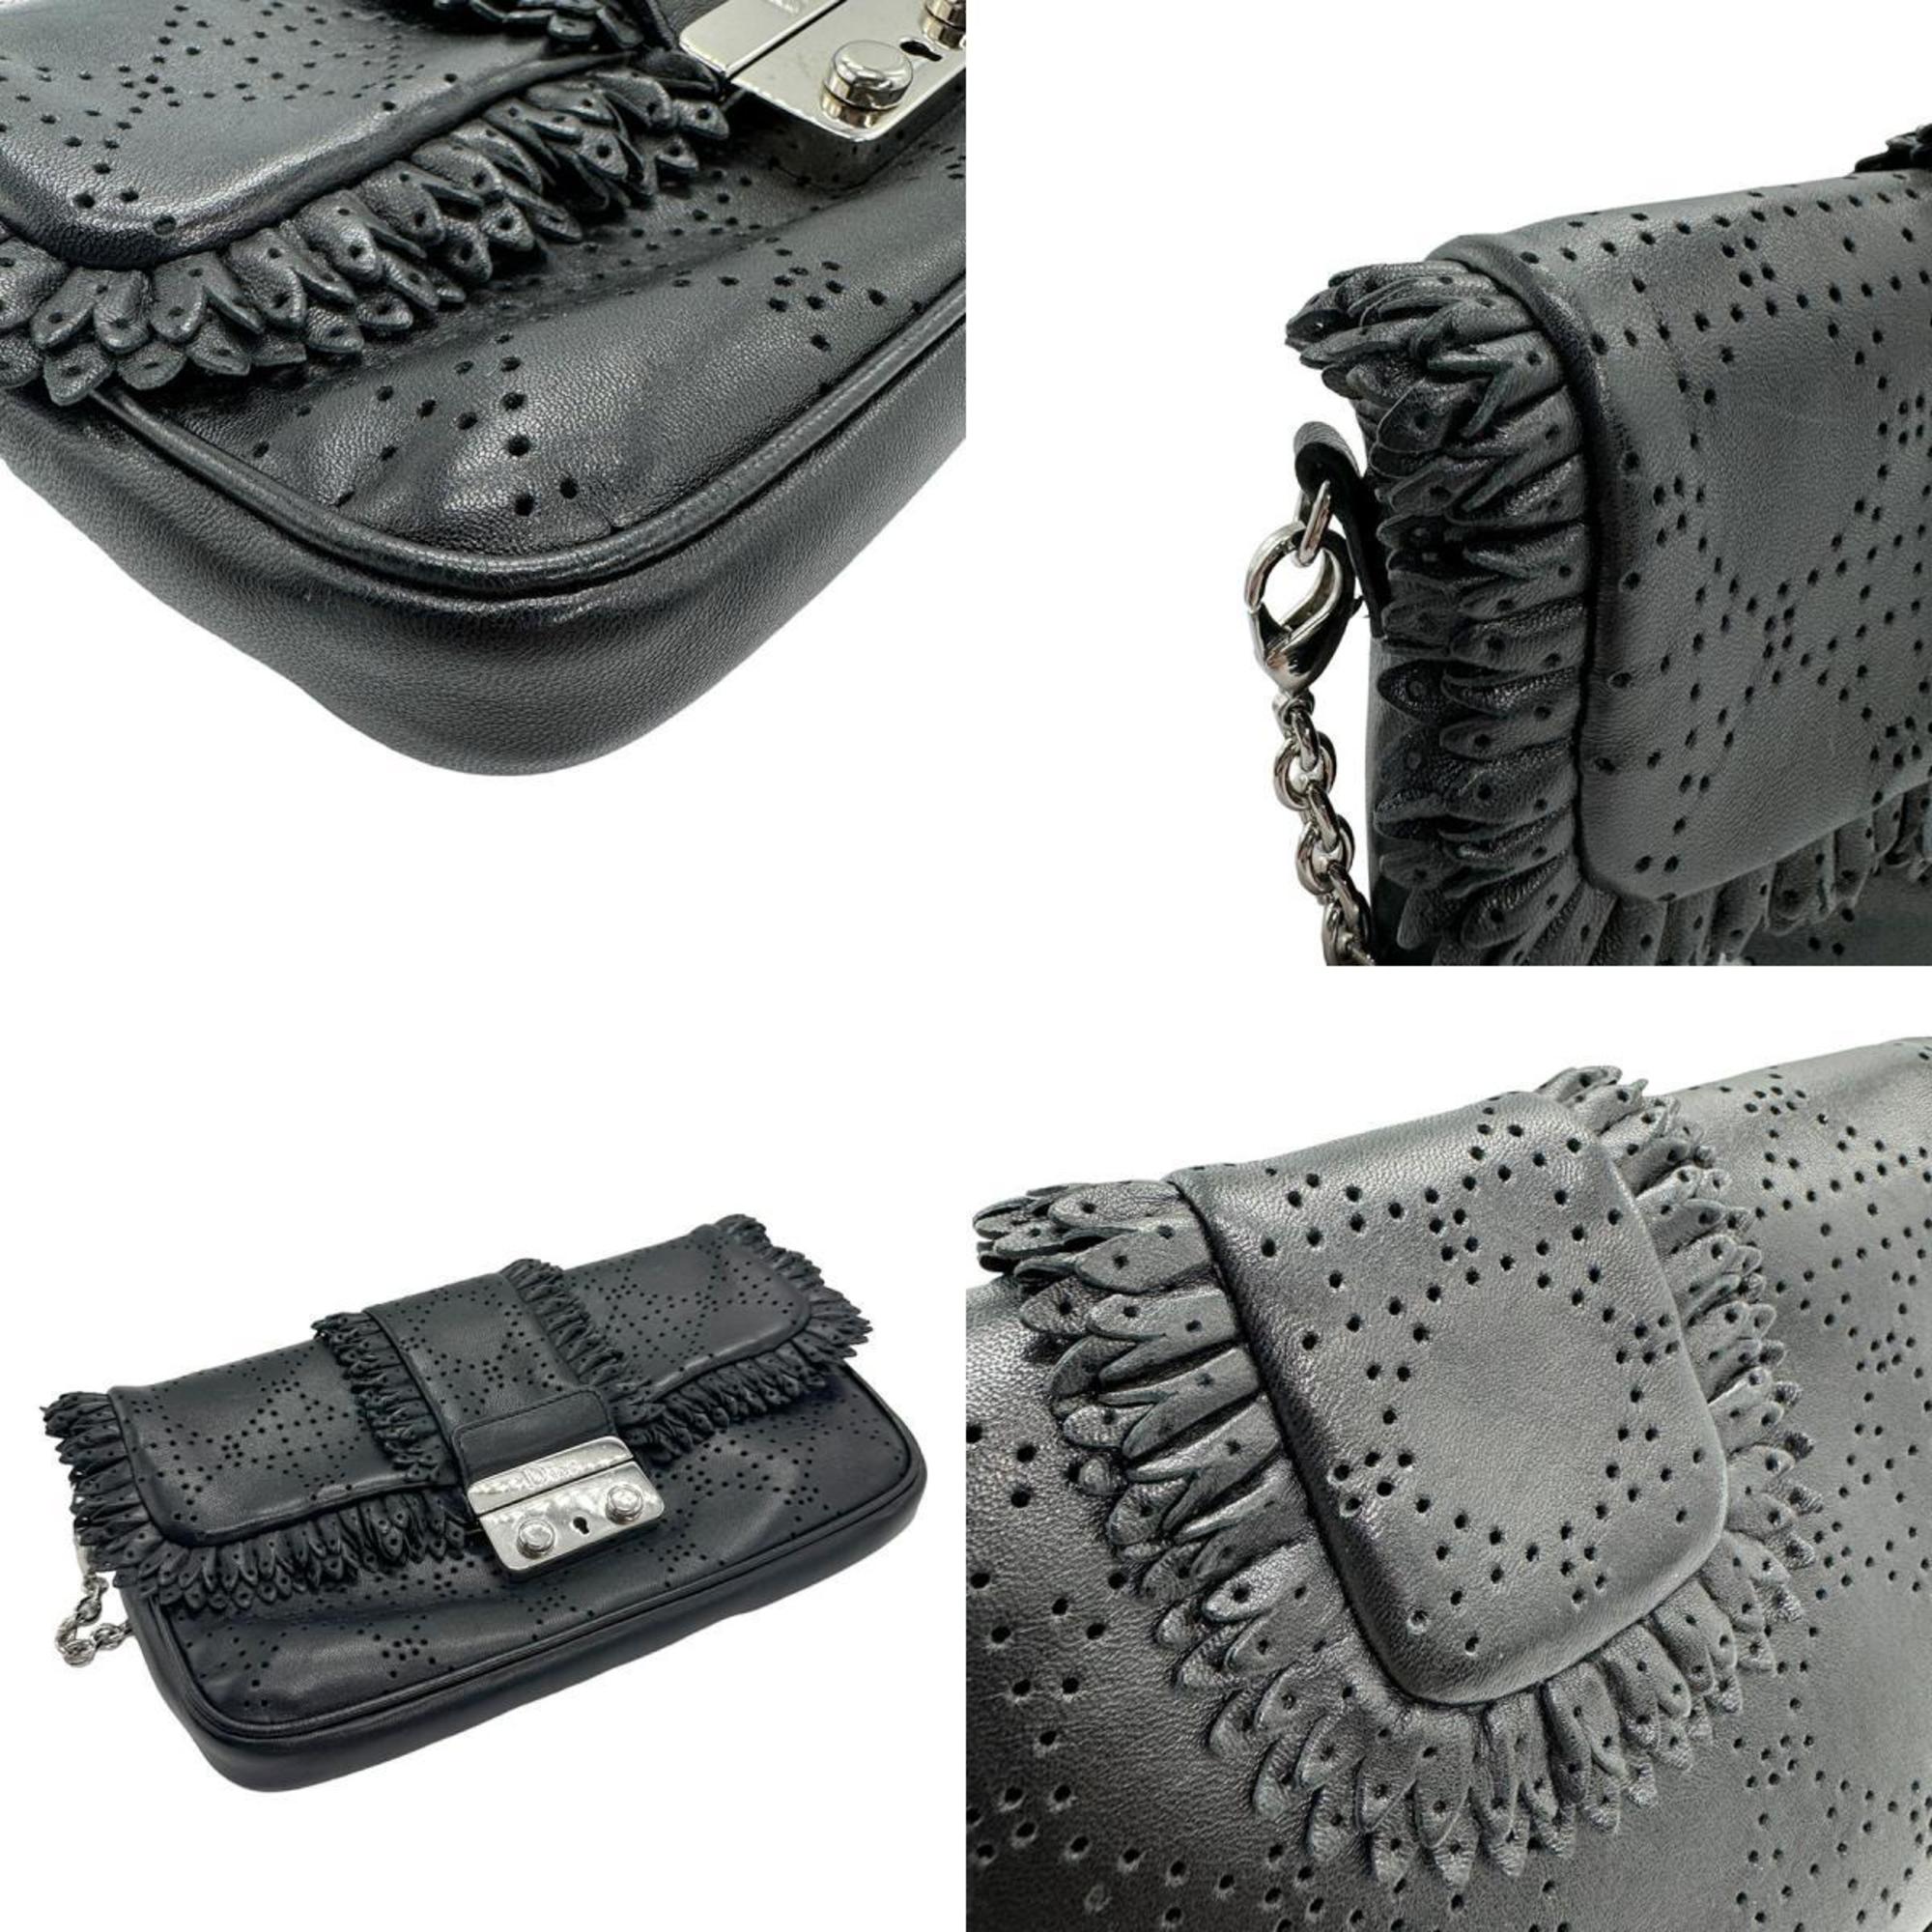 Christian Dior Shoulder Bag Leather Black Women's z1107